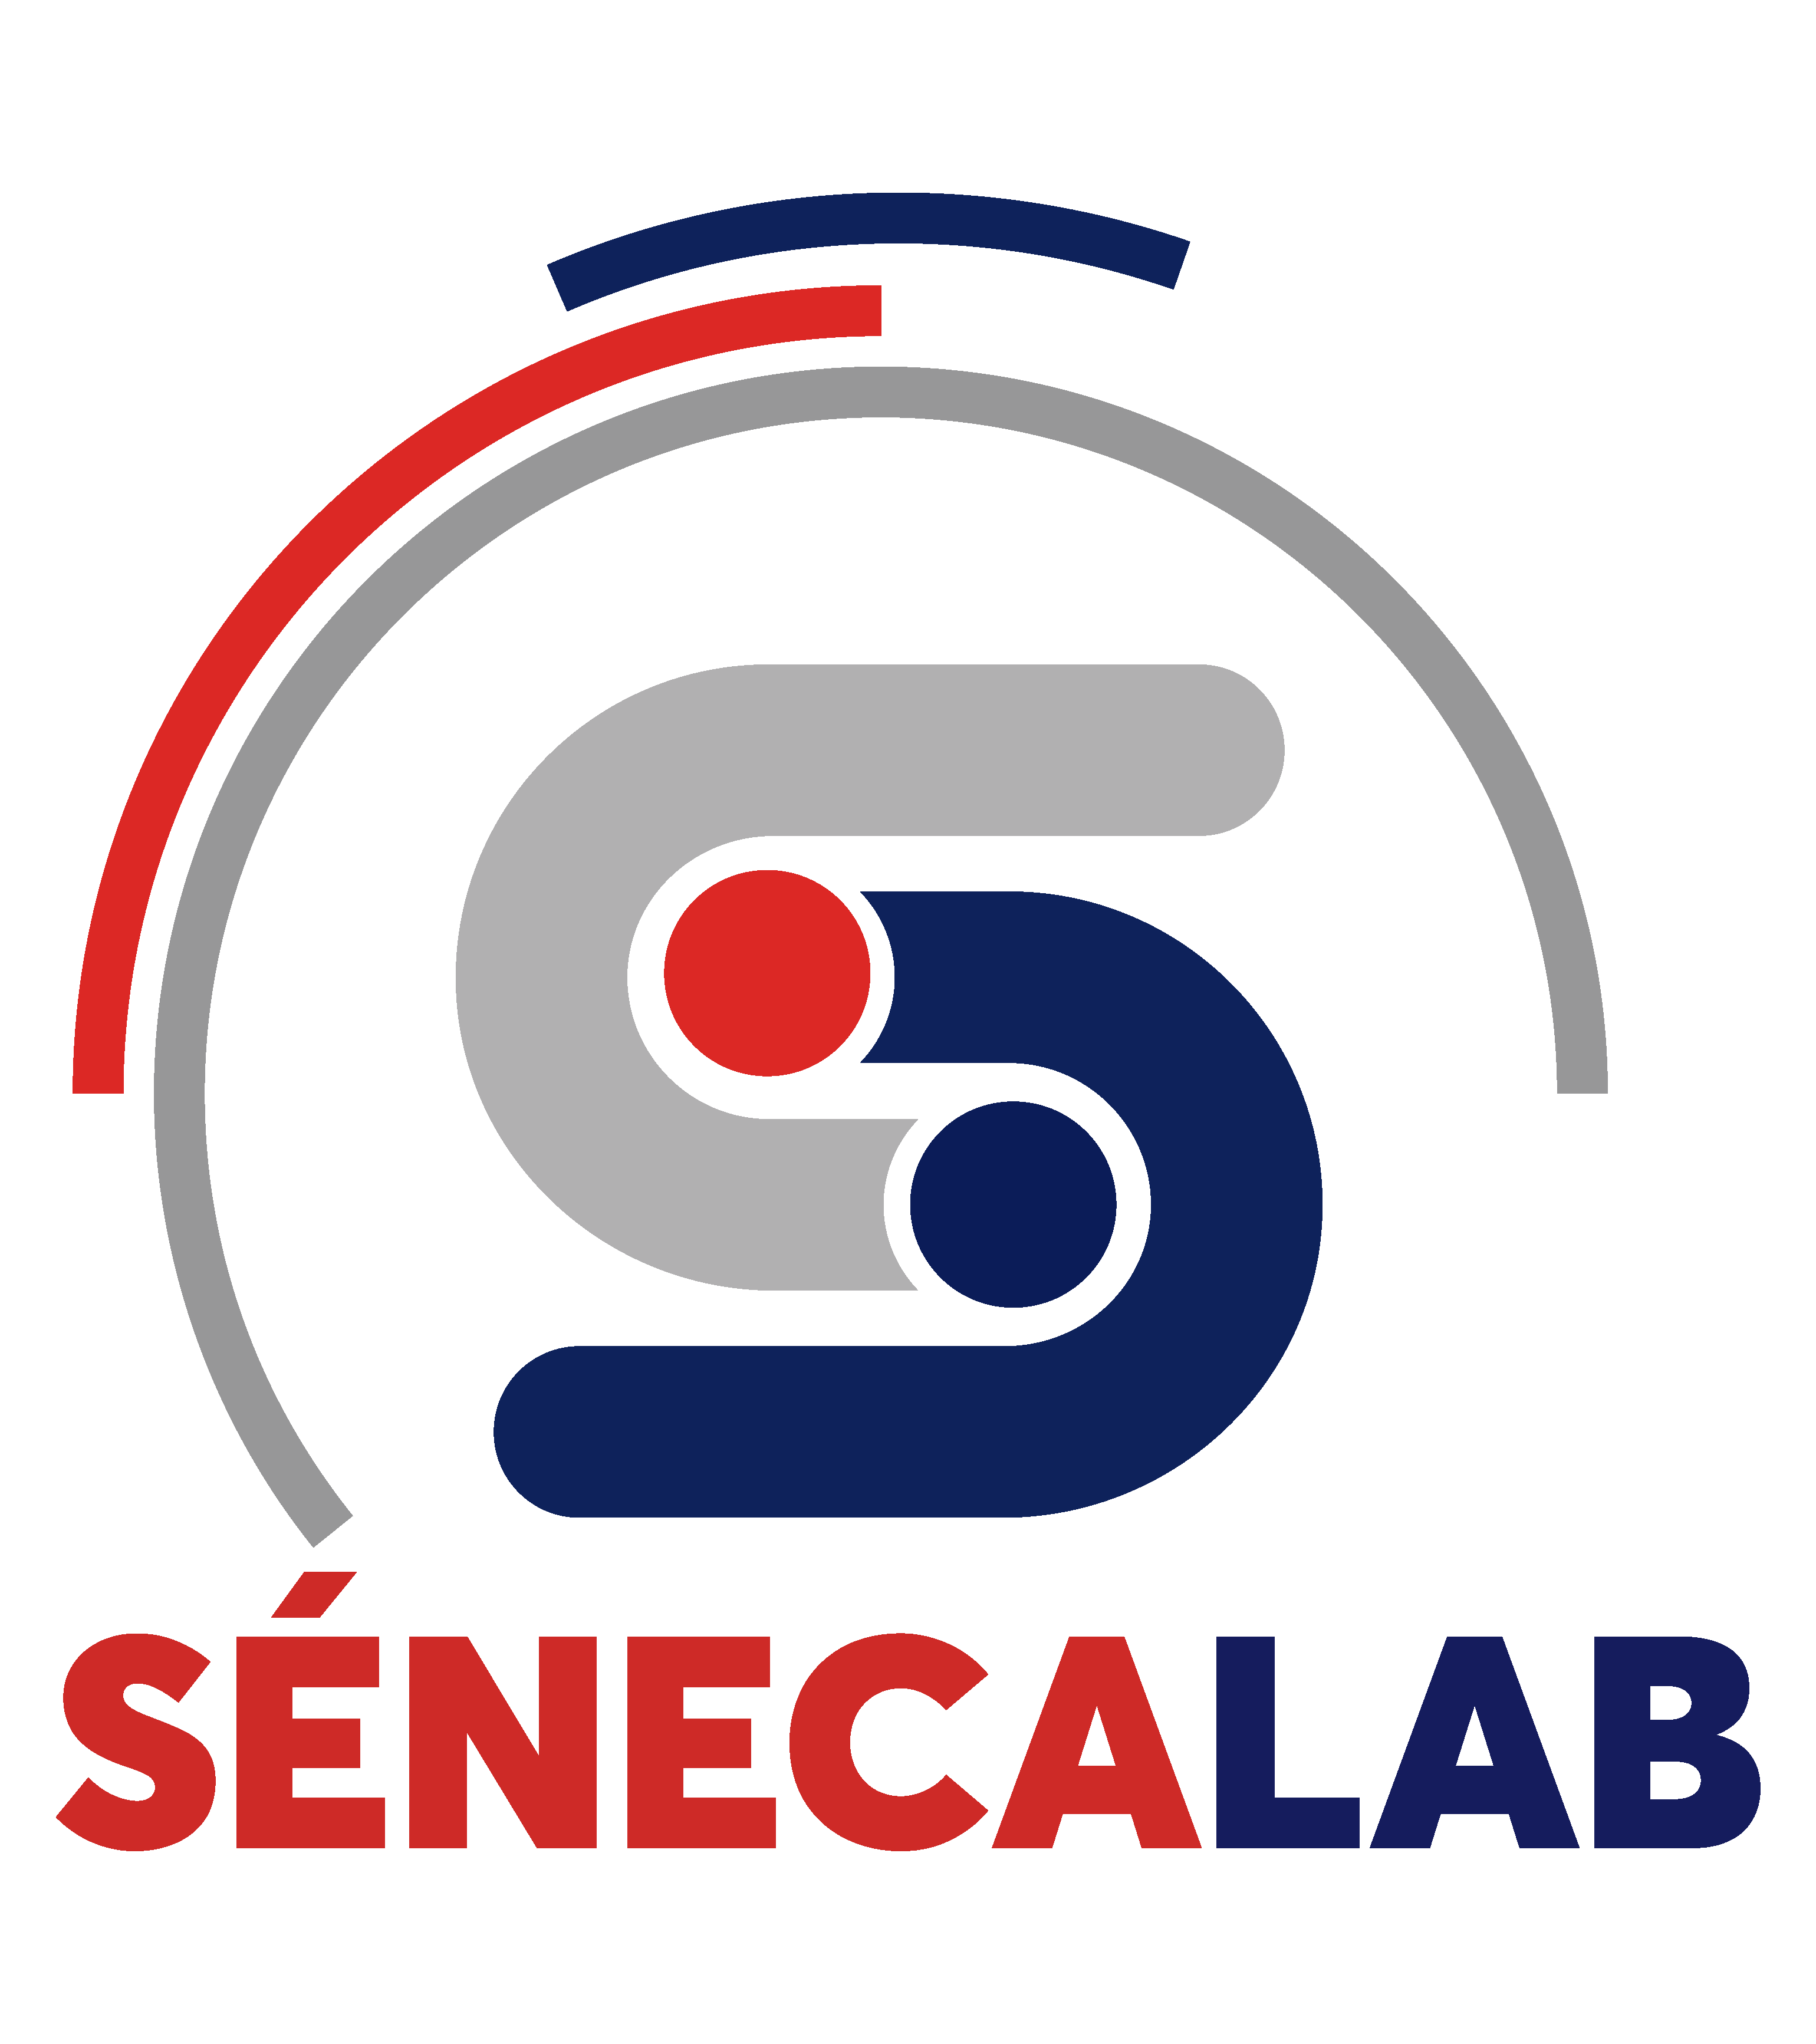 SenecaLab